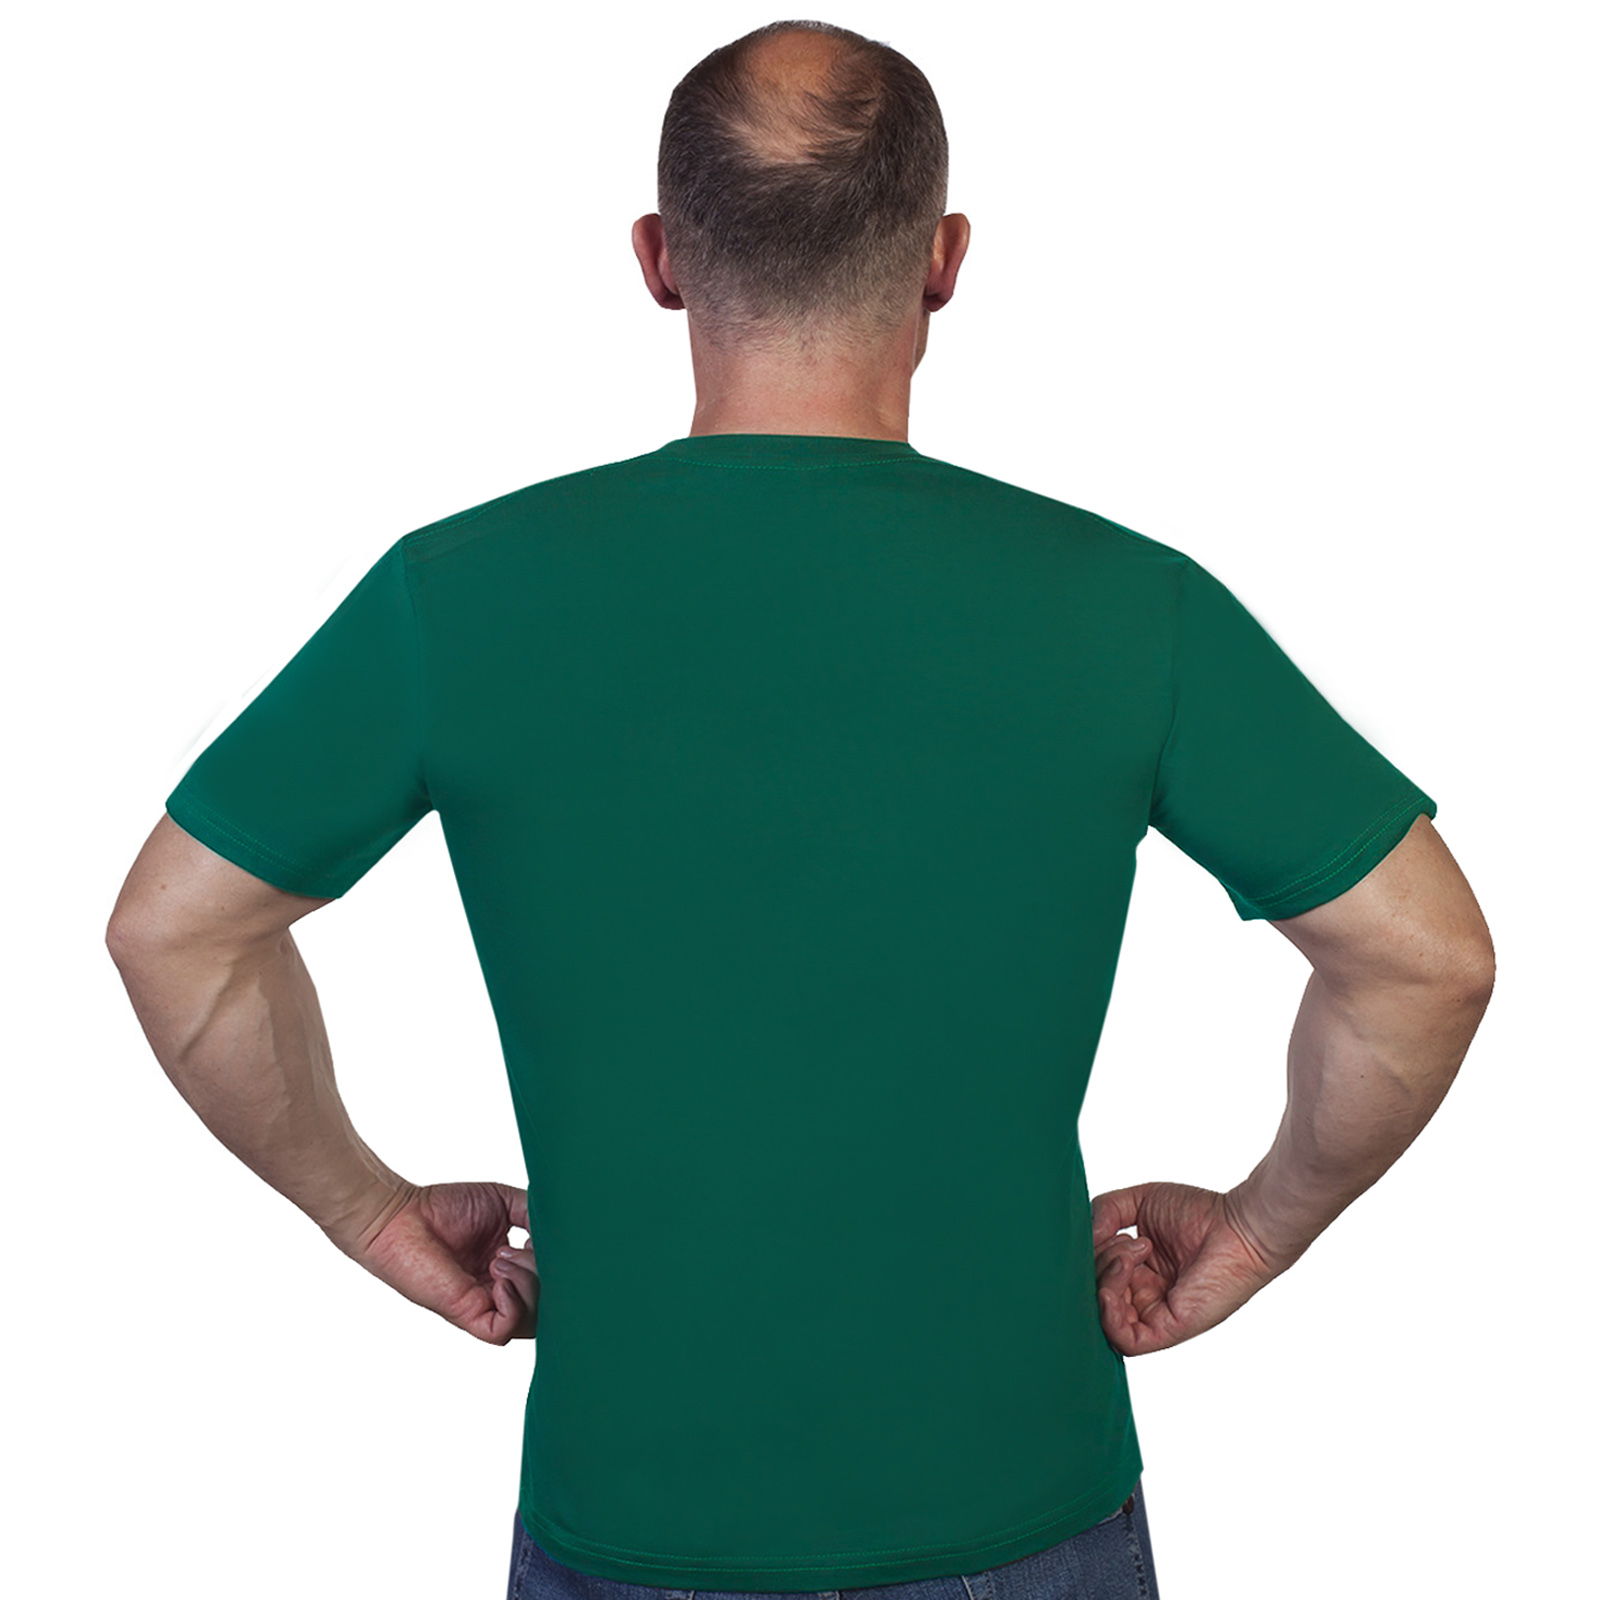 Мужская зелёная футболка с термотрансфером "Бывших пограничников не бывает" 